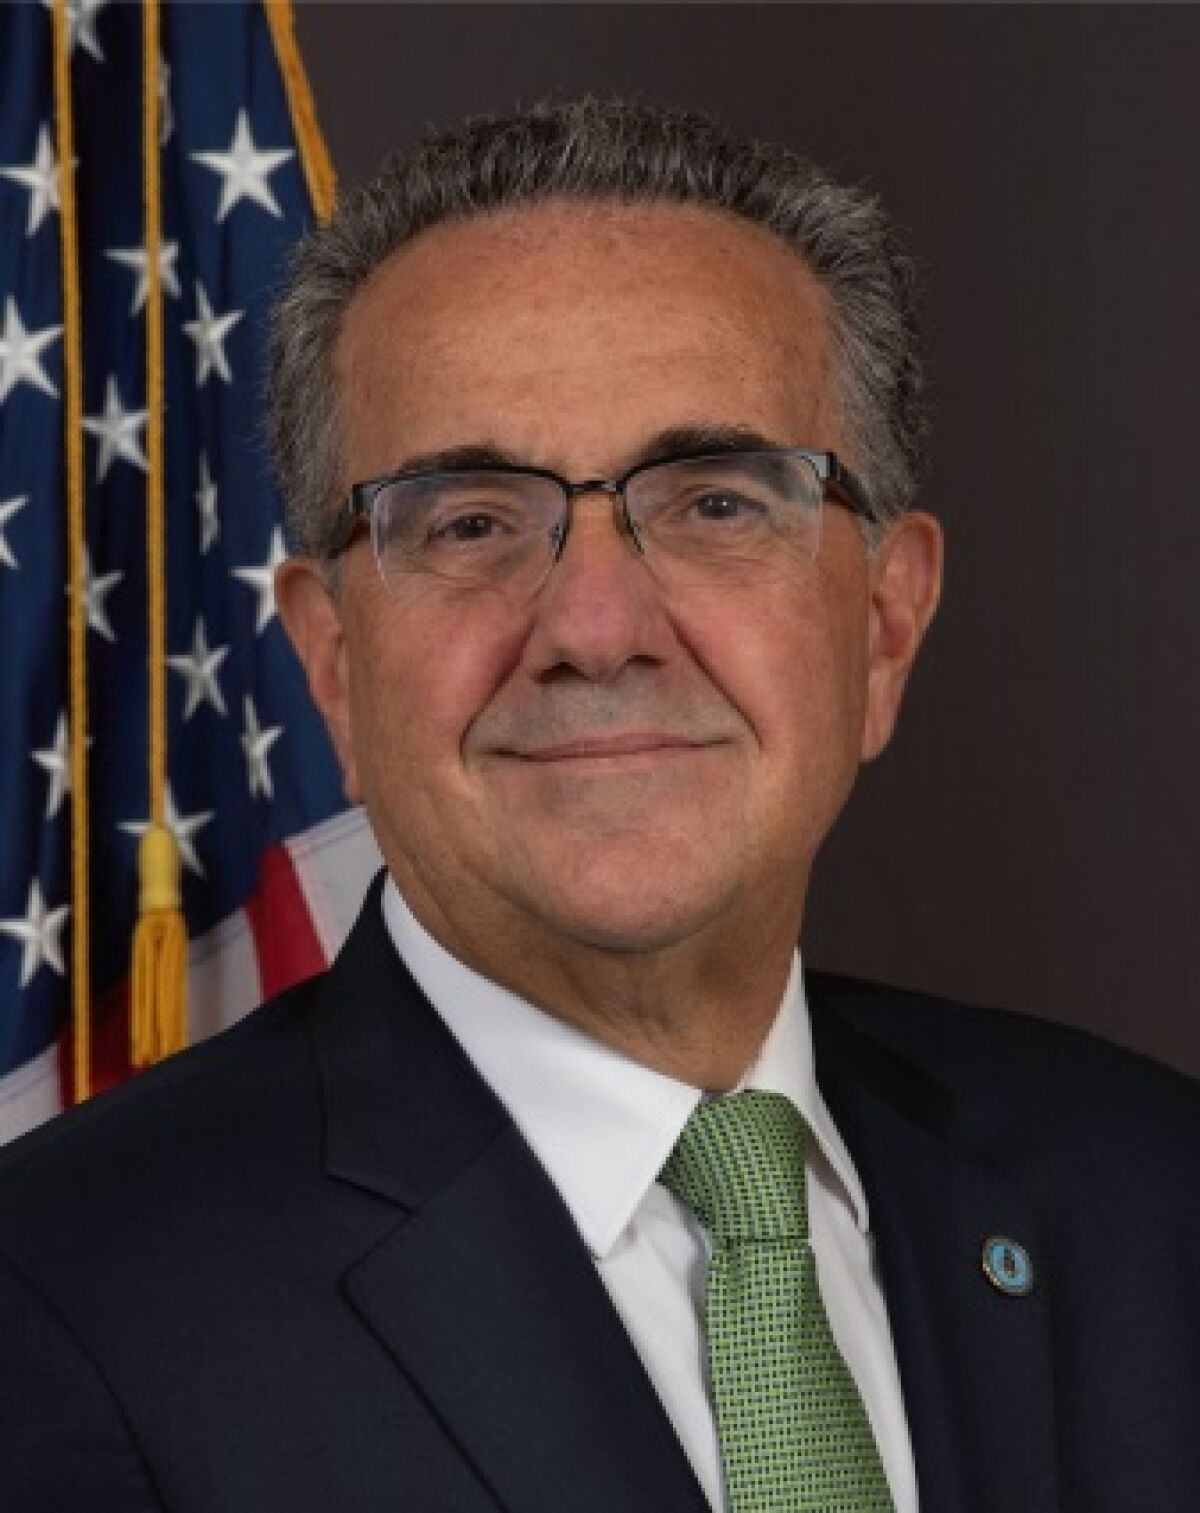 City Councilman Joe LaCava